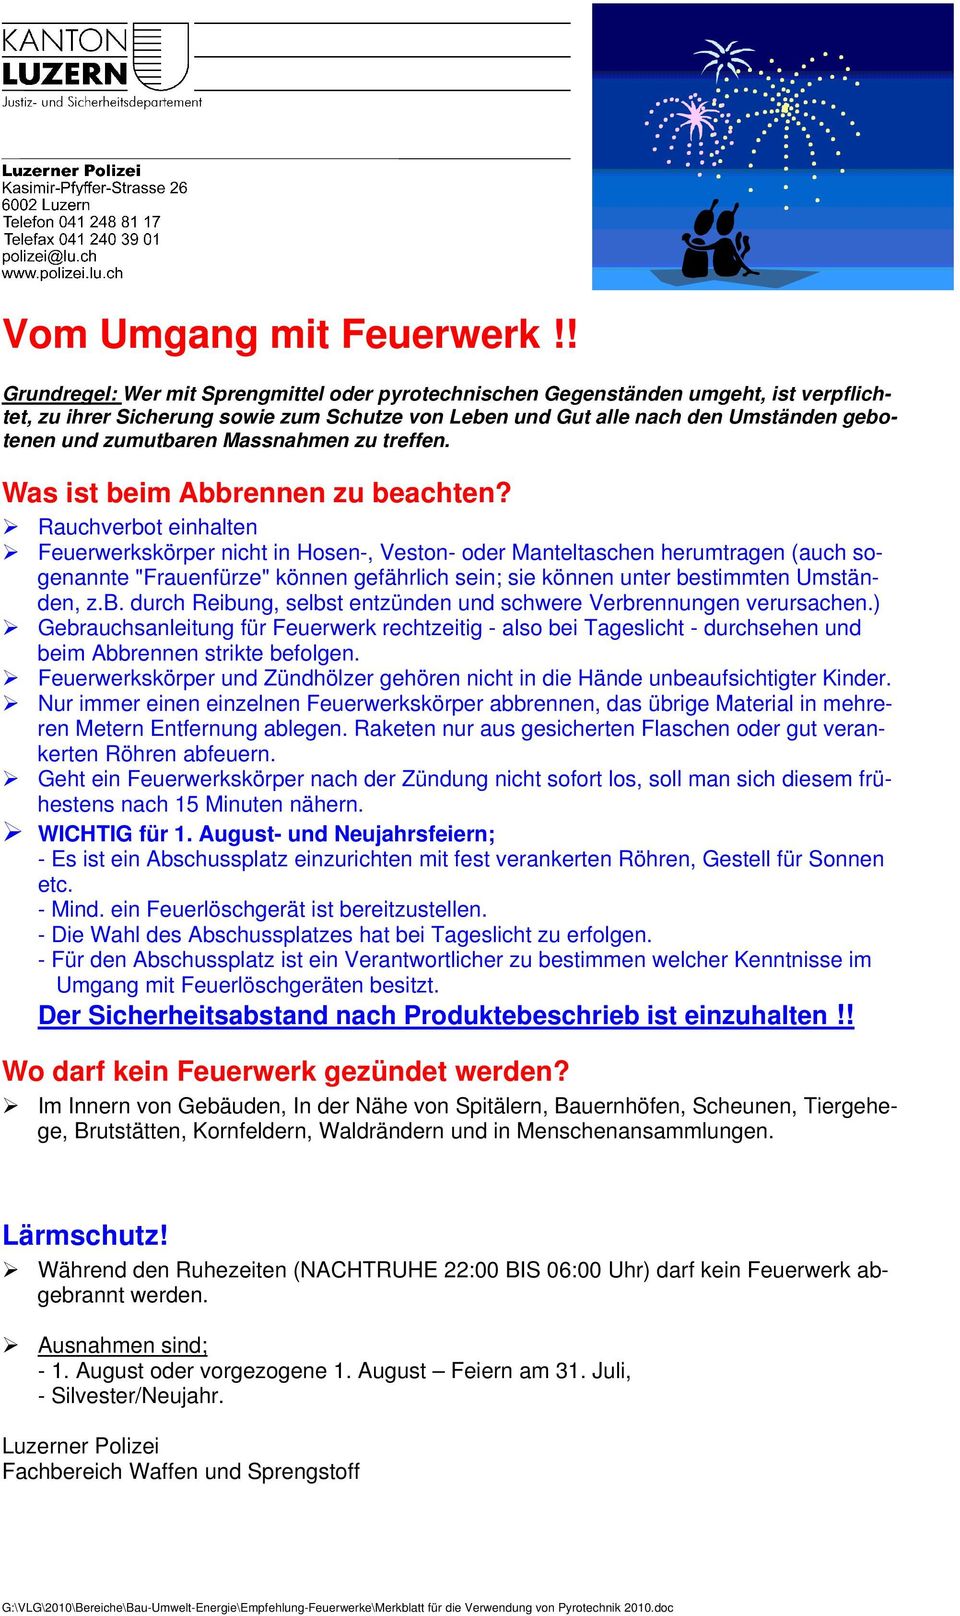 Merkblatt Fur Die Gemeinden Betreffend Feuerwerke Pdf Kostenfreier Download